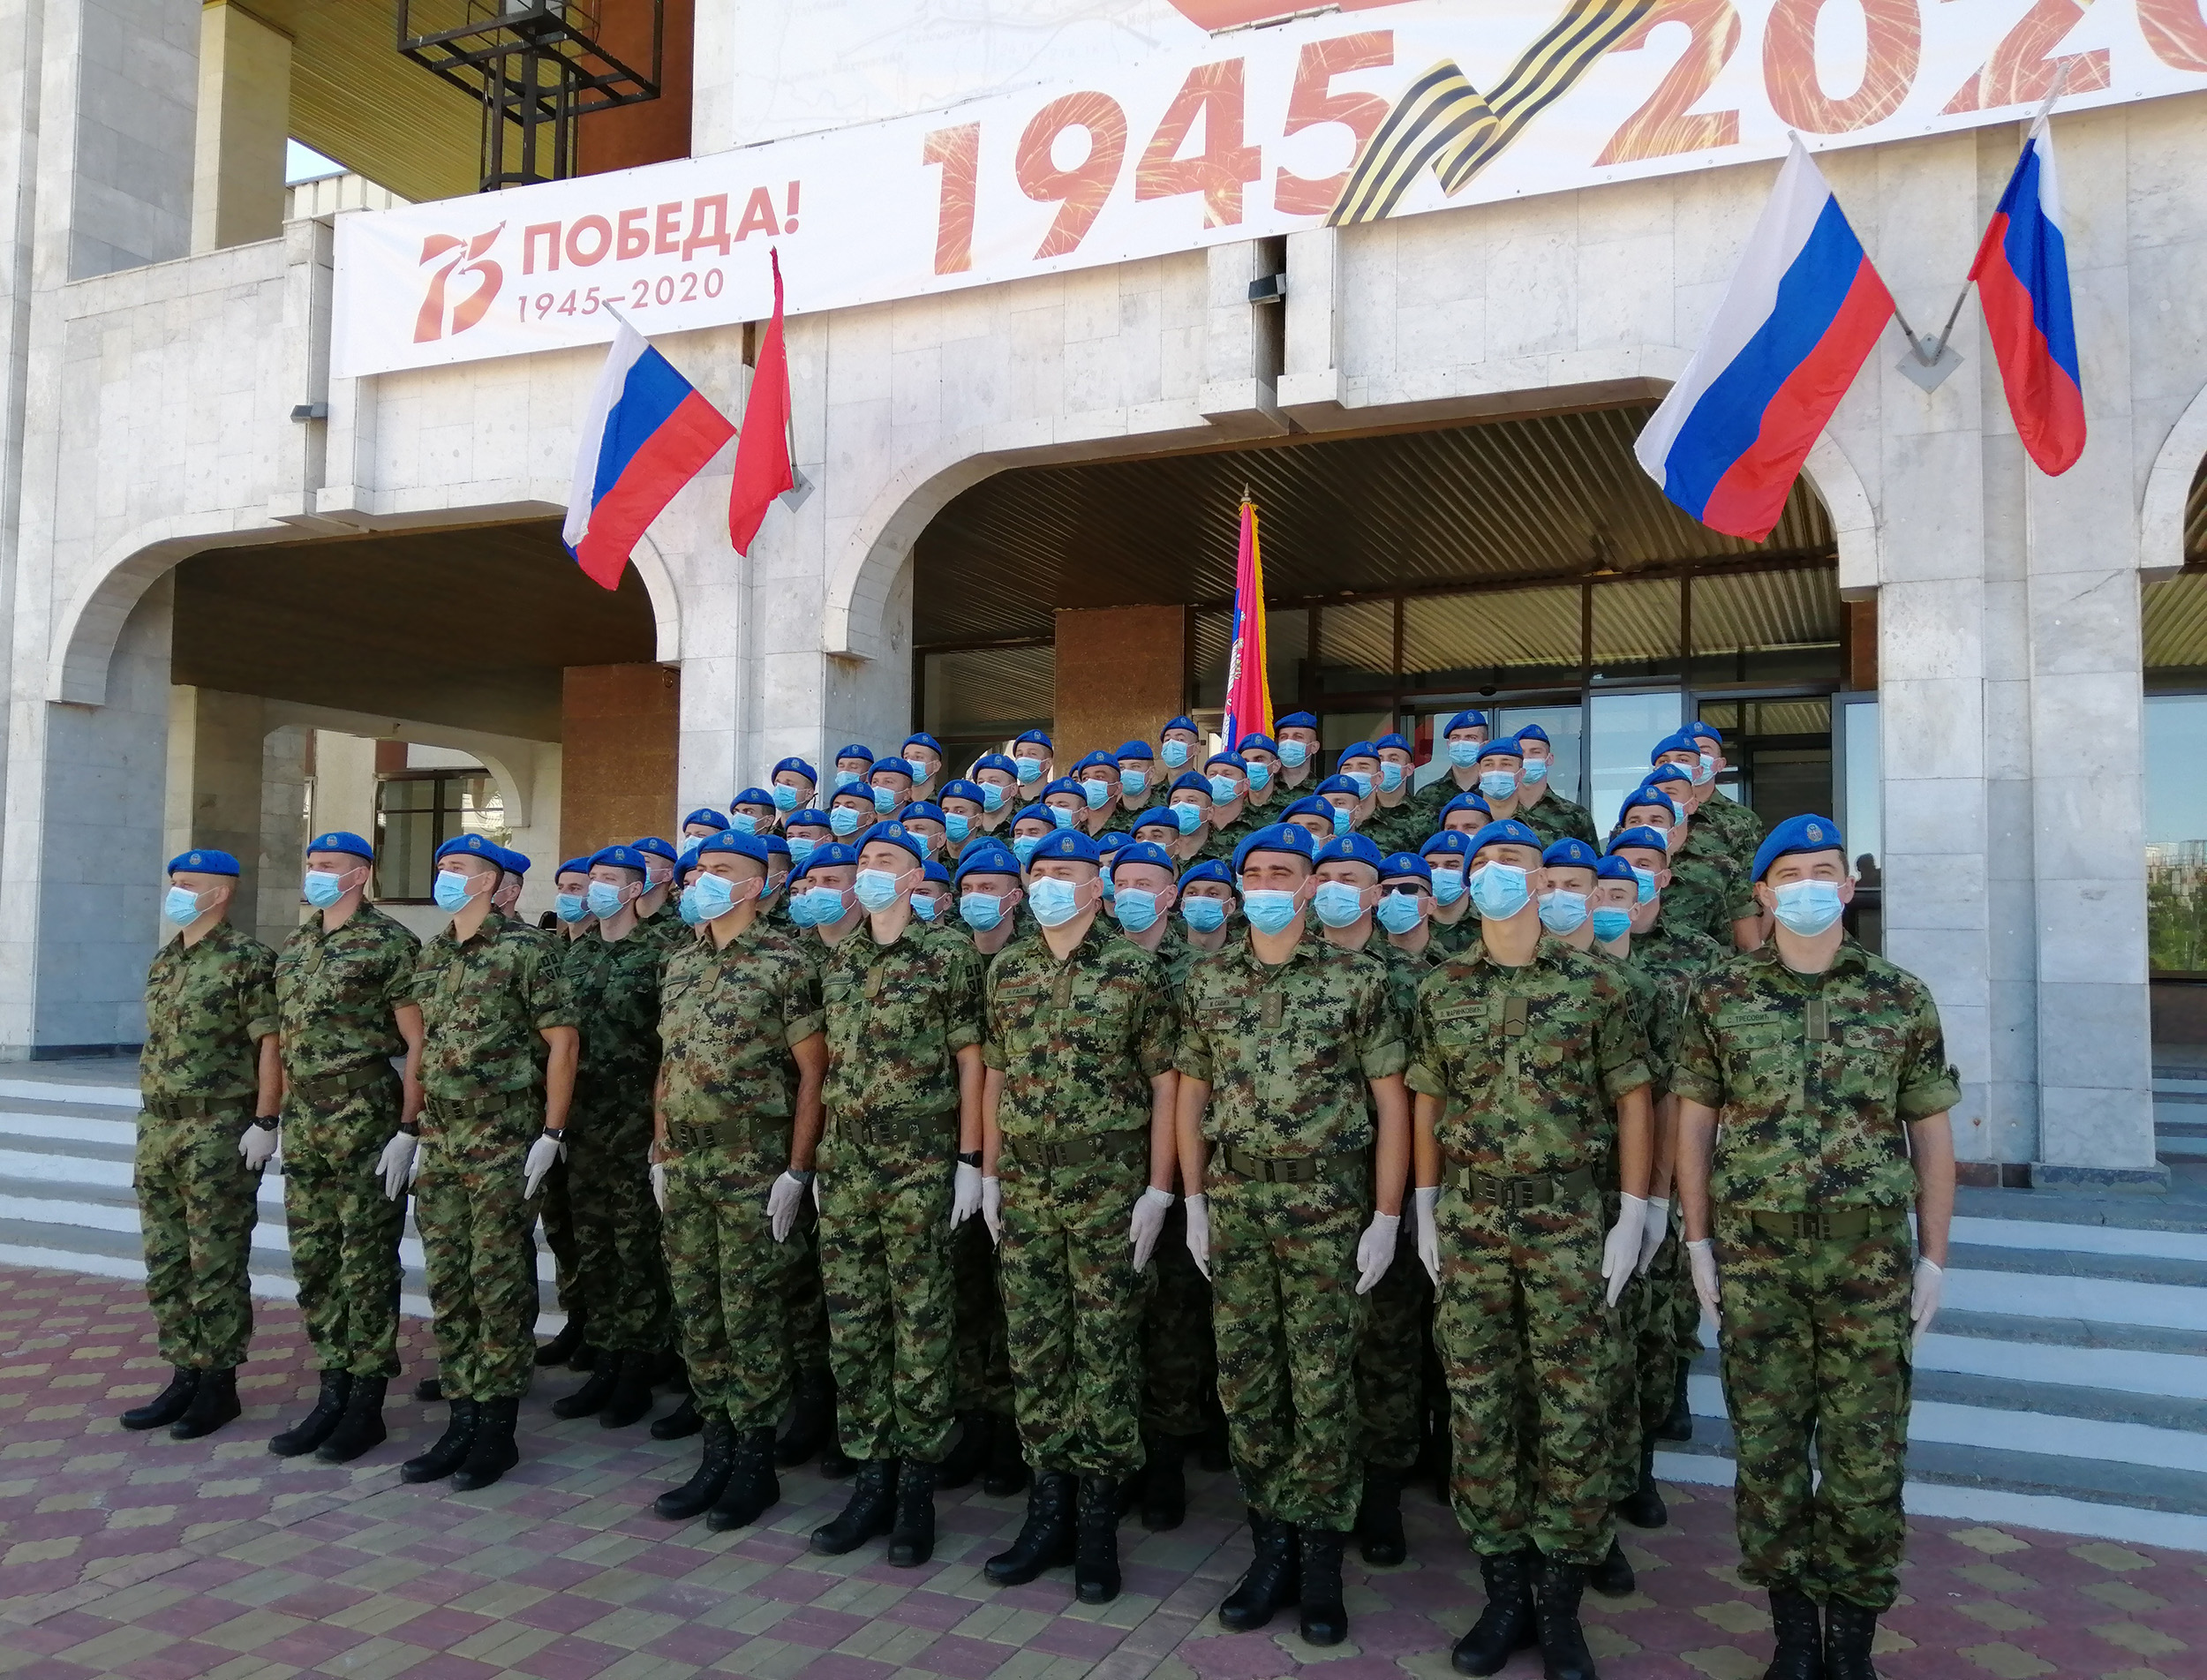 Сербские гвардейцы продезинфицированы и готовы к Параду